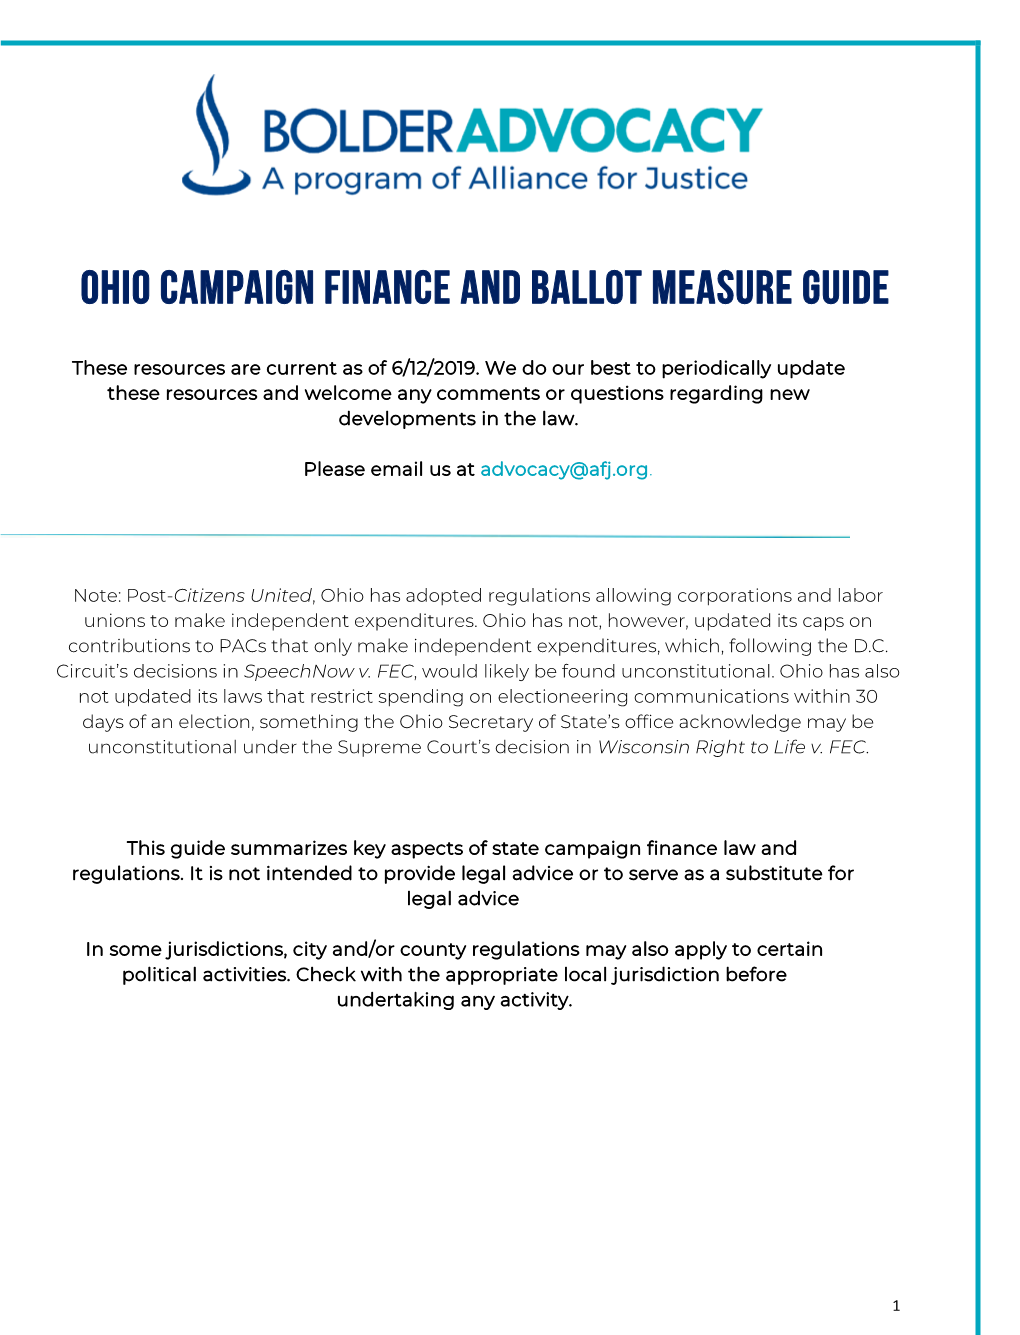 Ohio Campaign Finance and Ballot Measure Guide